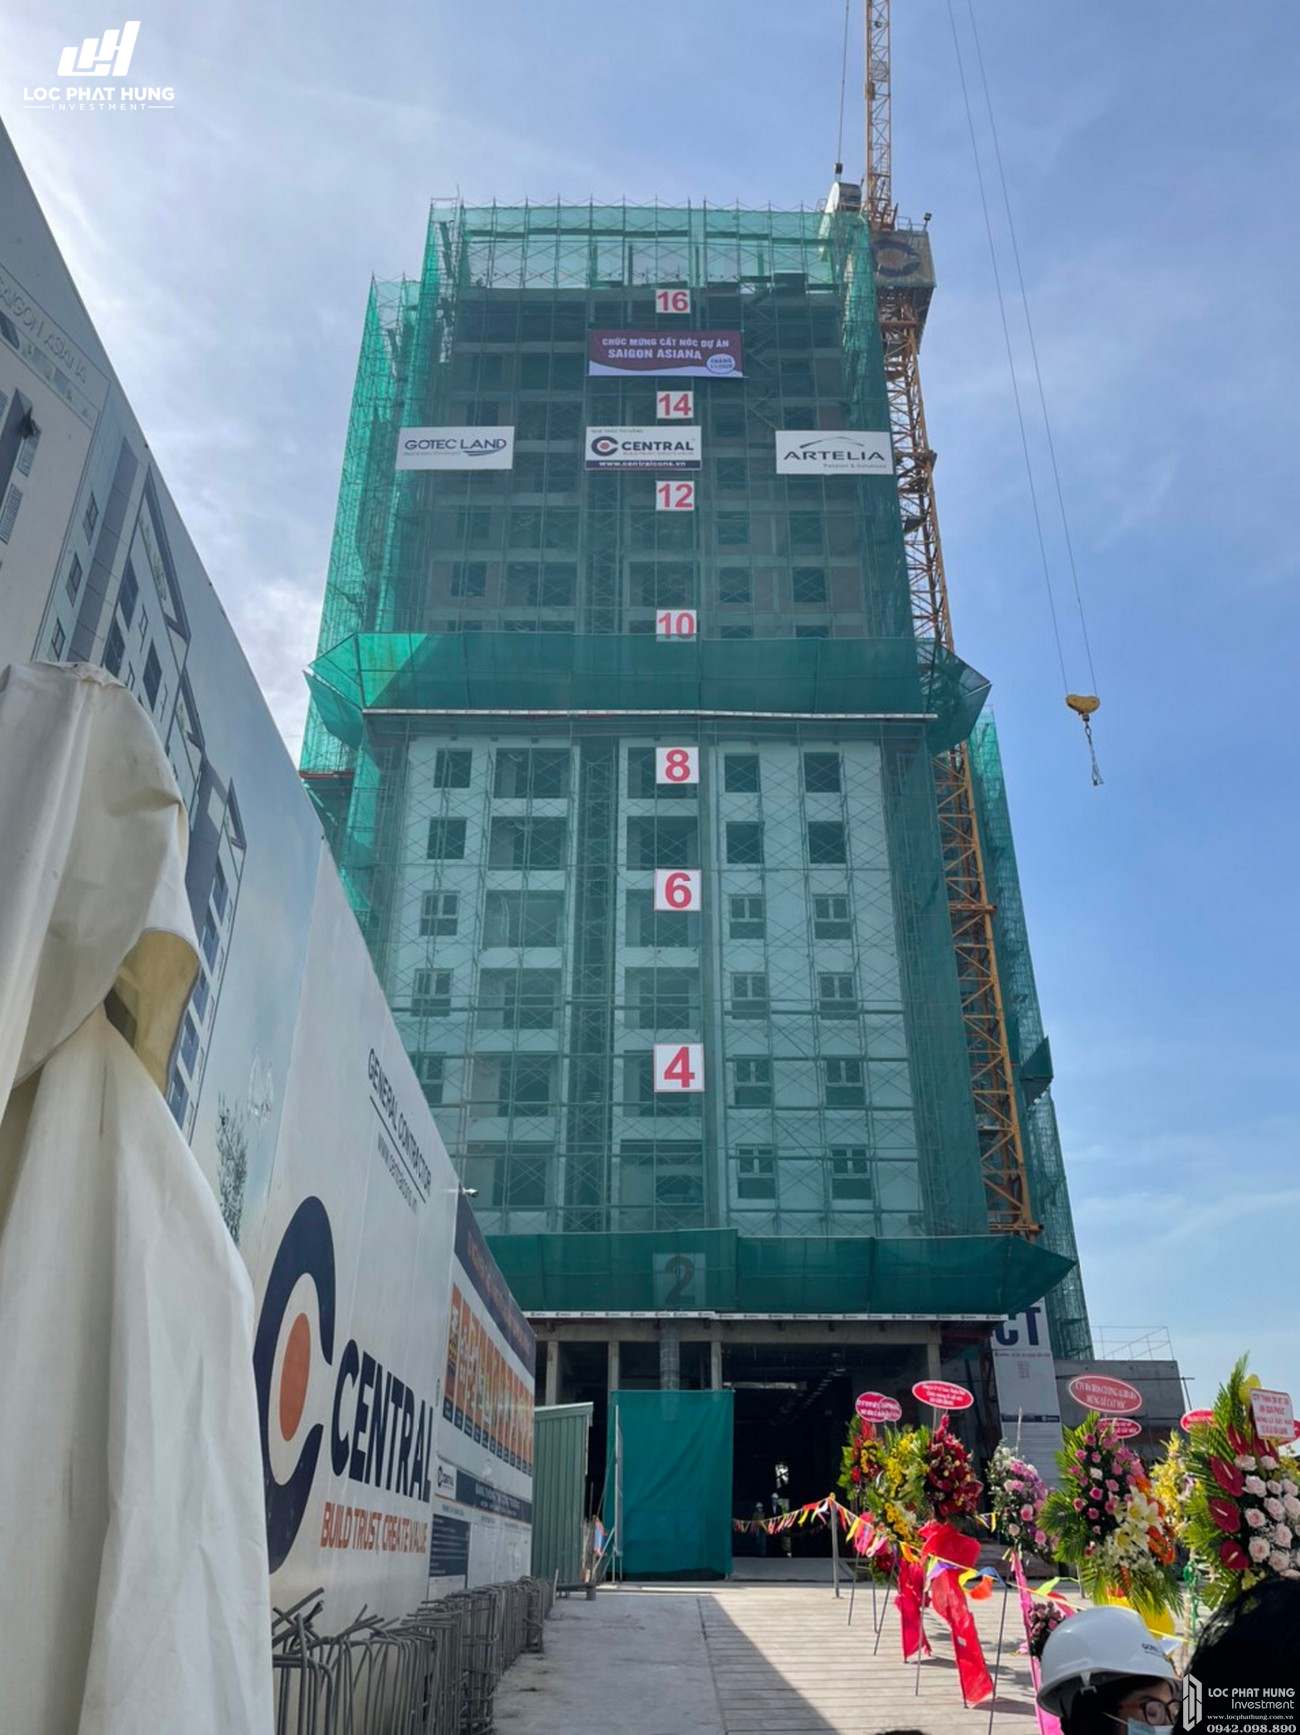 Lễ cất nóc dự án căn hộ chung cư Saigon Asiana Quận 6 tháng 12/2020 Đường Nguyễn Văn Luông chủ đầu tư Gotec Land